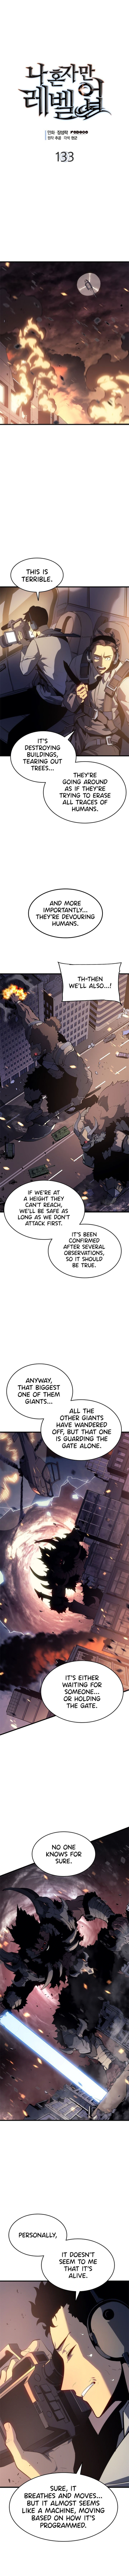 Solo Leveling Manga Manga Chapter - 133 - image 1